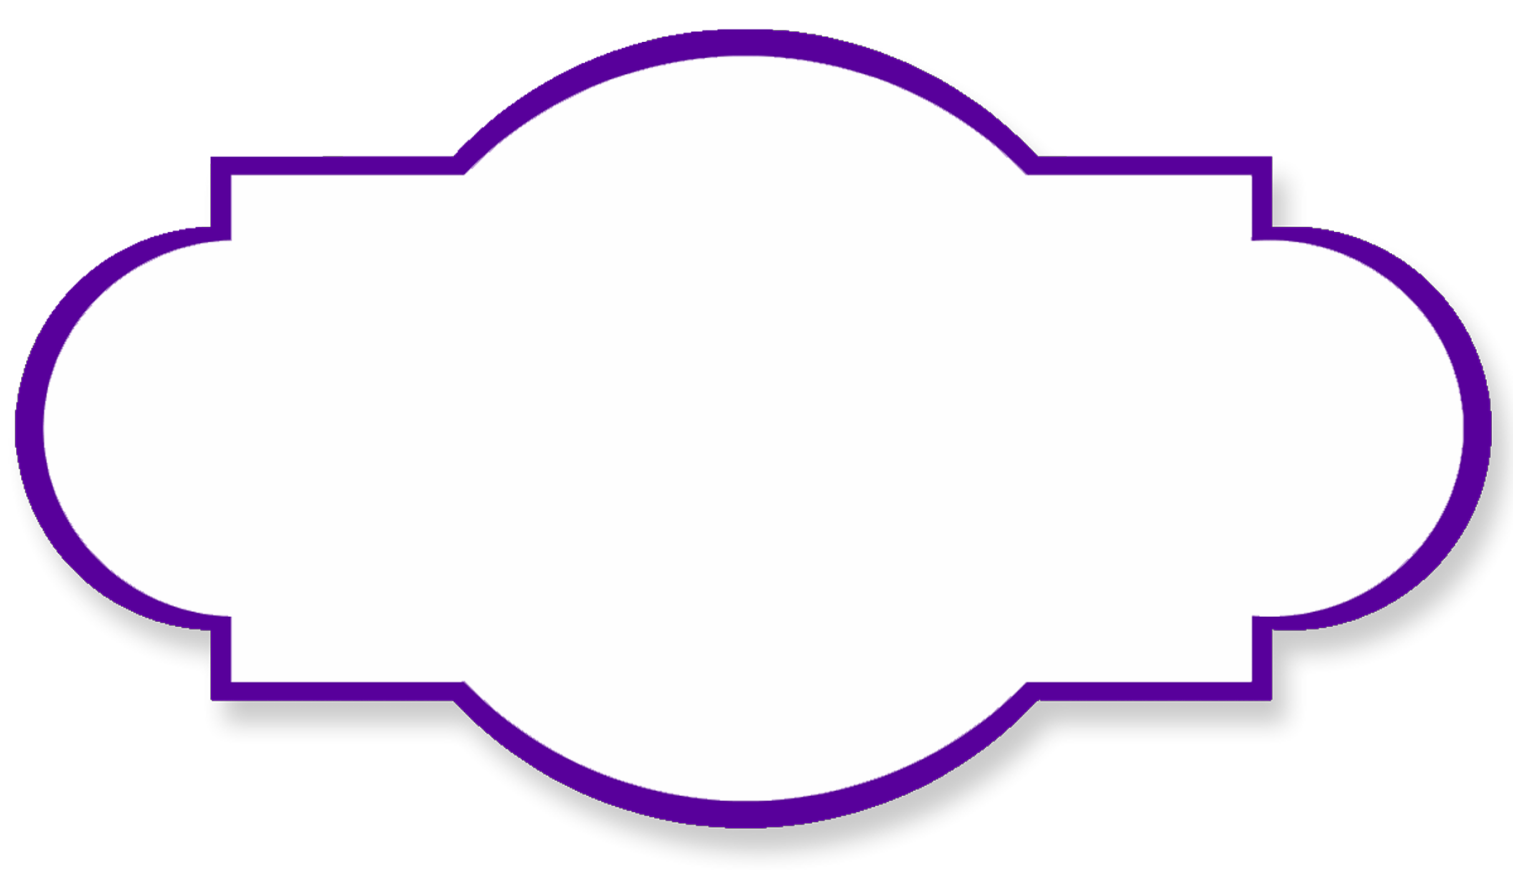 Purple Ribbon Border Clipart